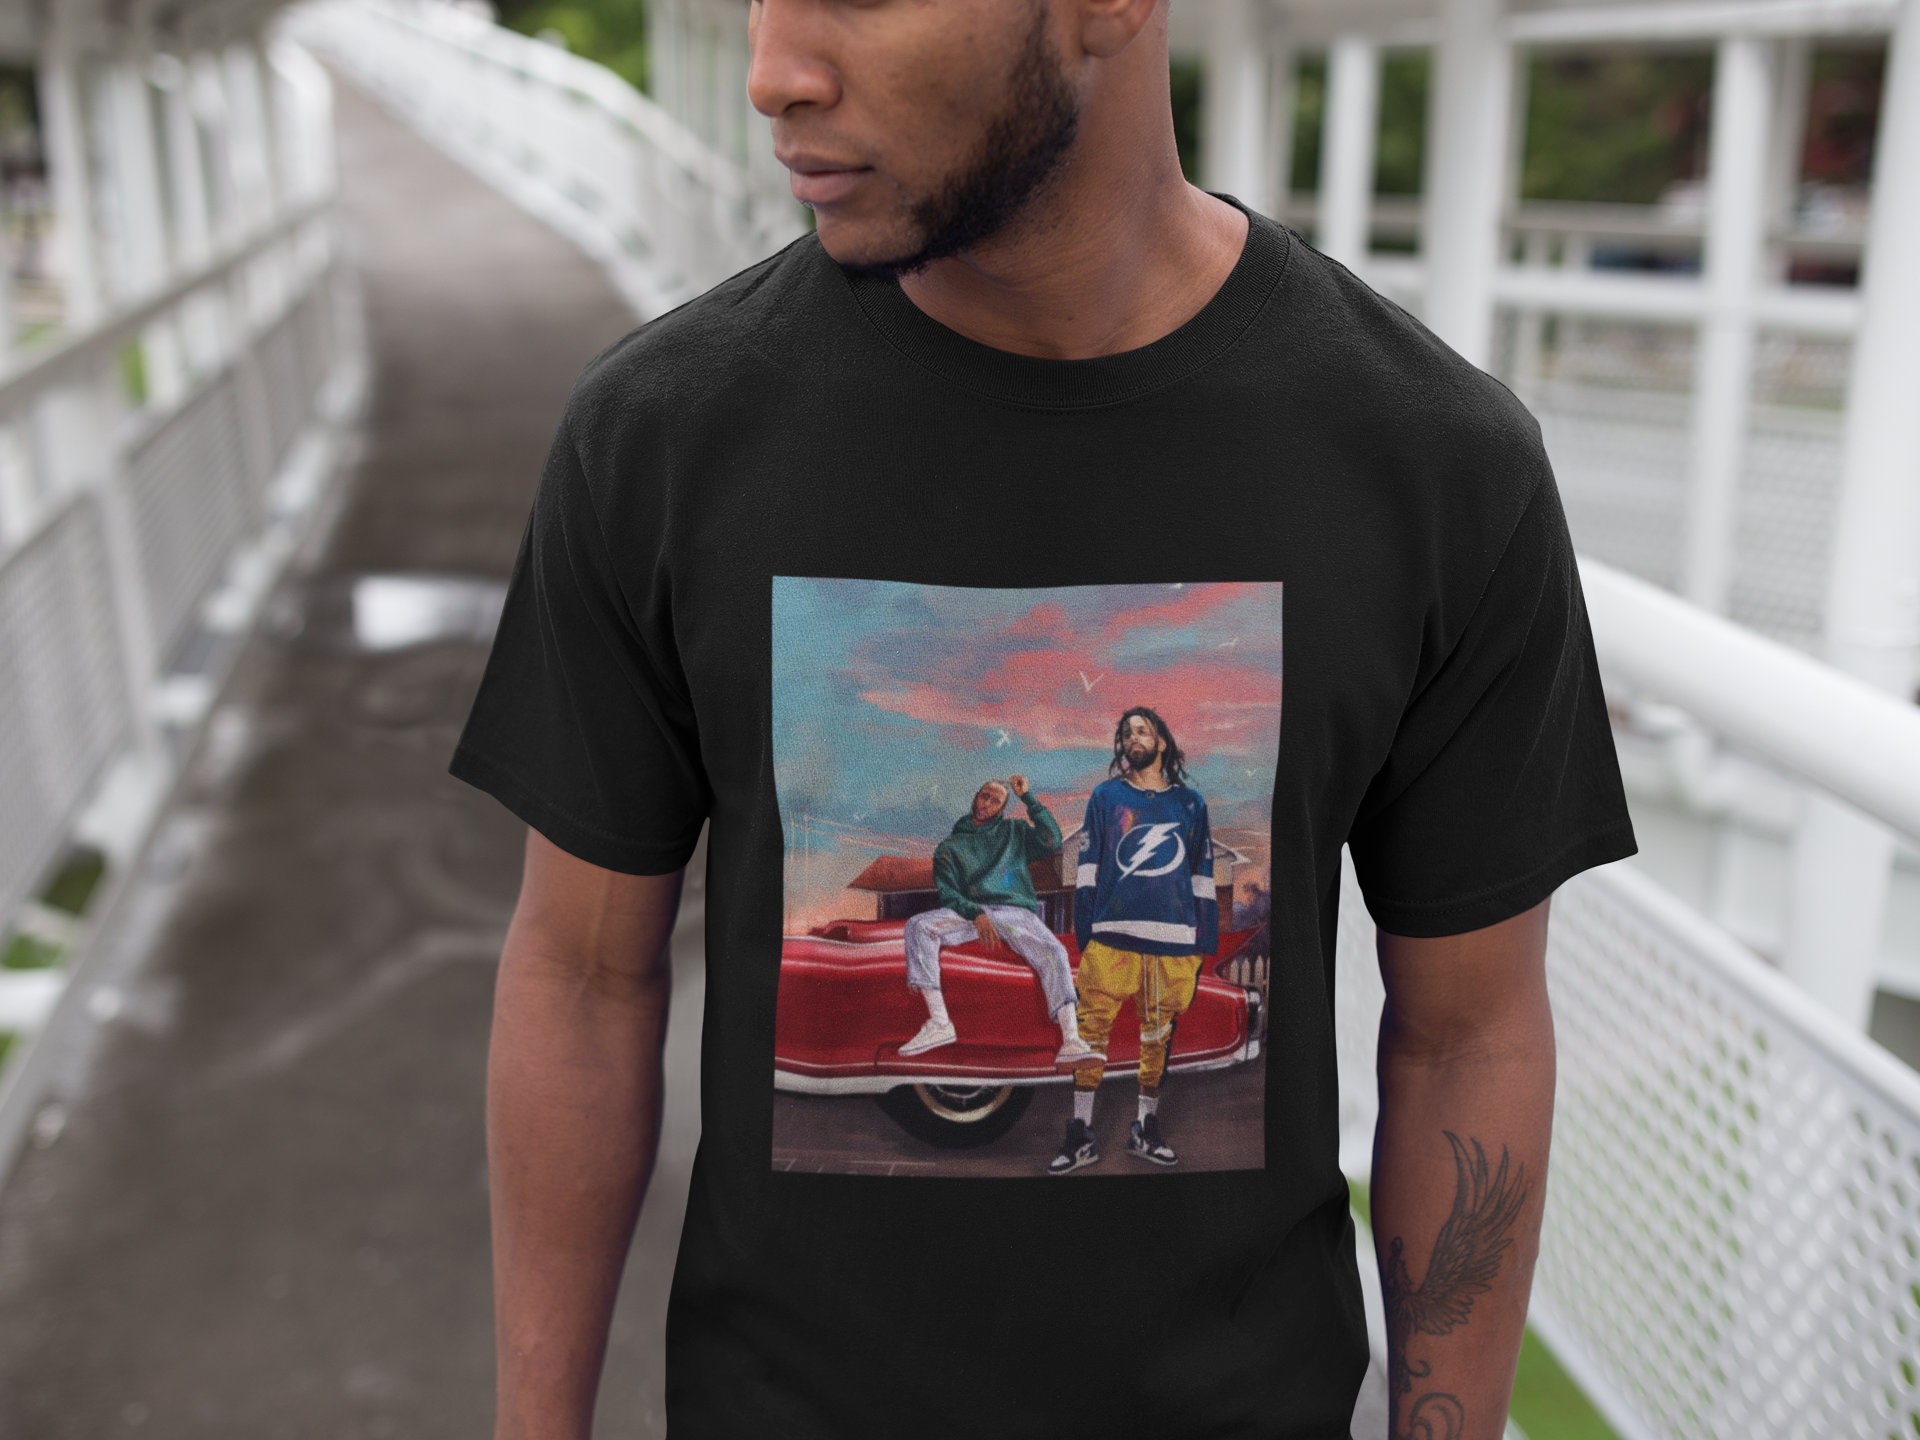 J Cole Dreams T-shirt J Cole T-shirt Rapper Shirt Hiphop 